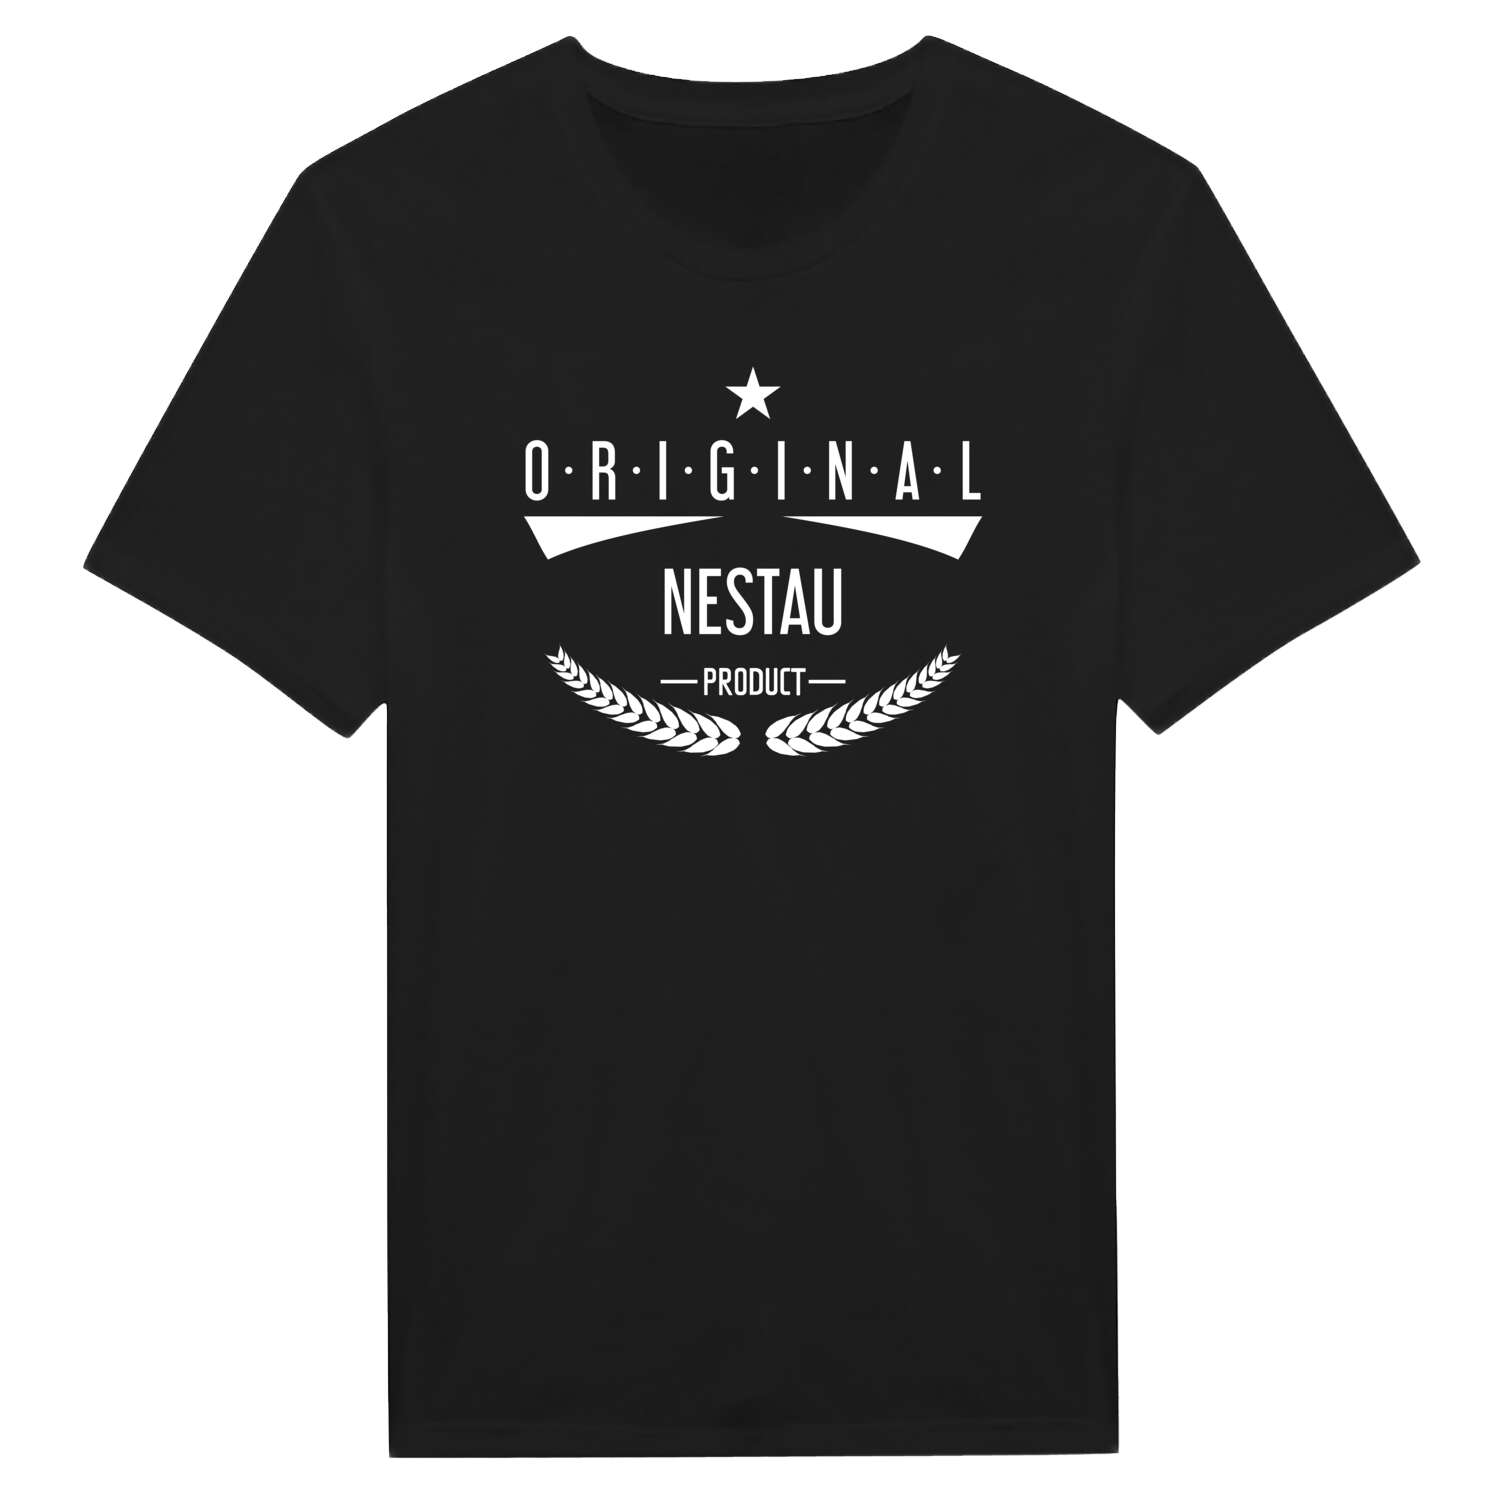 Nestau T-Shirt »Original Product«